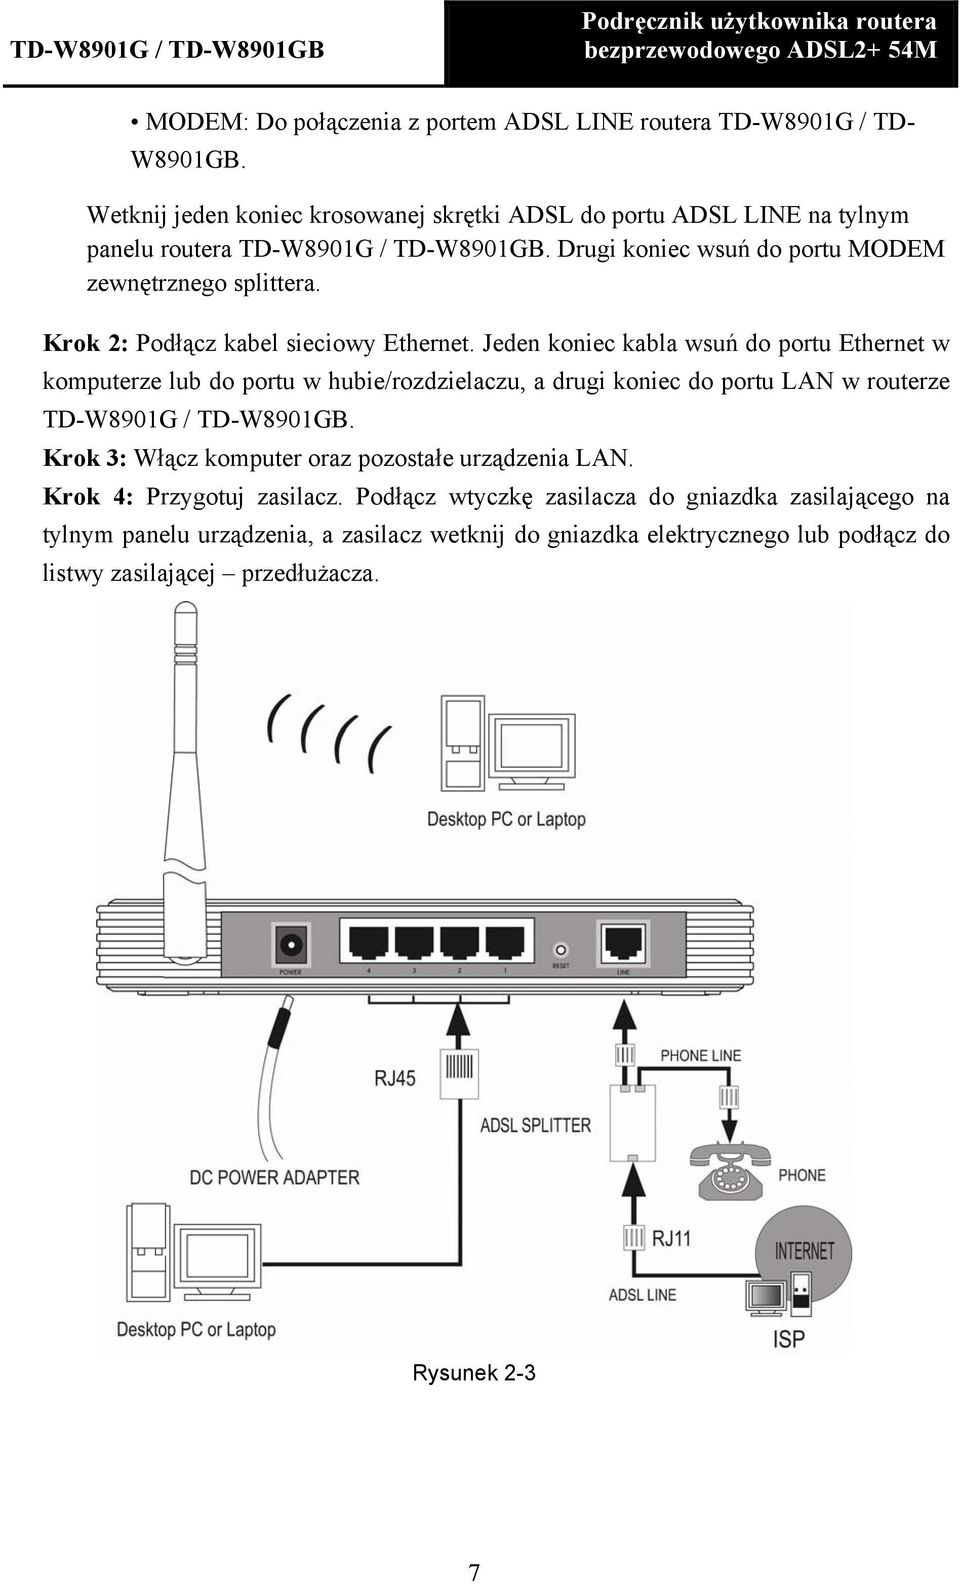 Krok 2: Podłącz kabel sieciowy Ethernet.